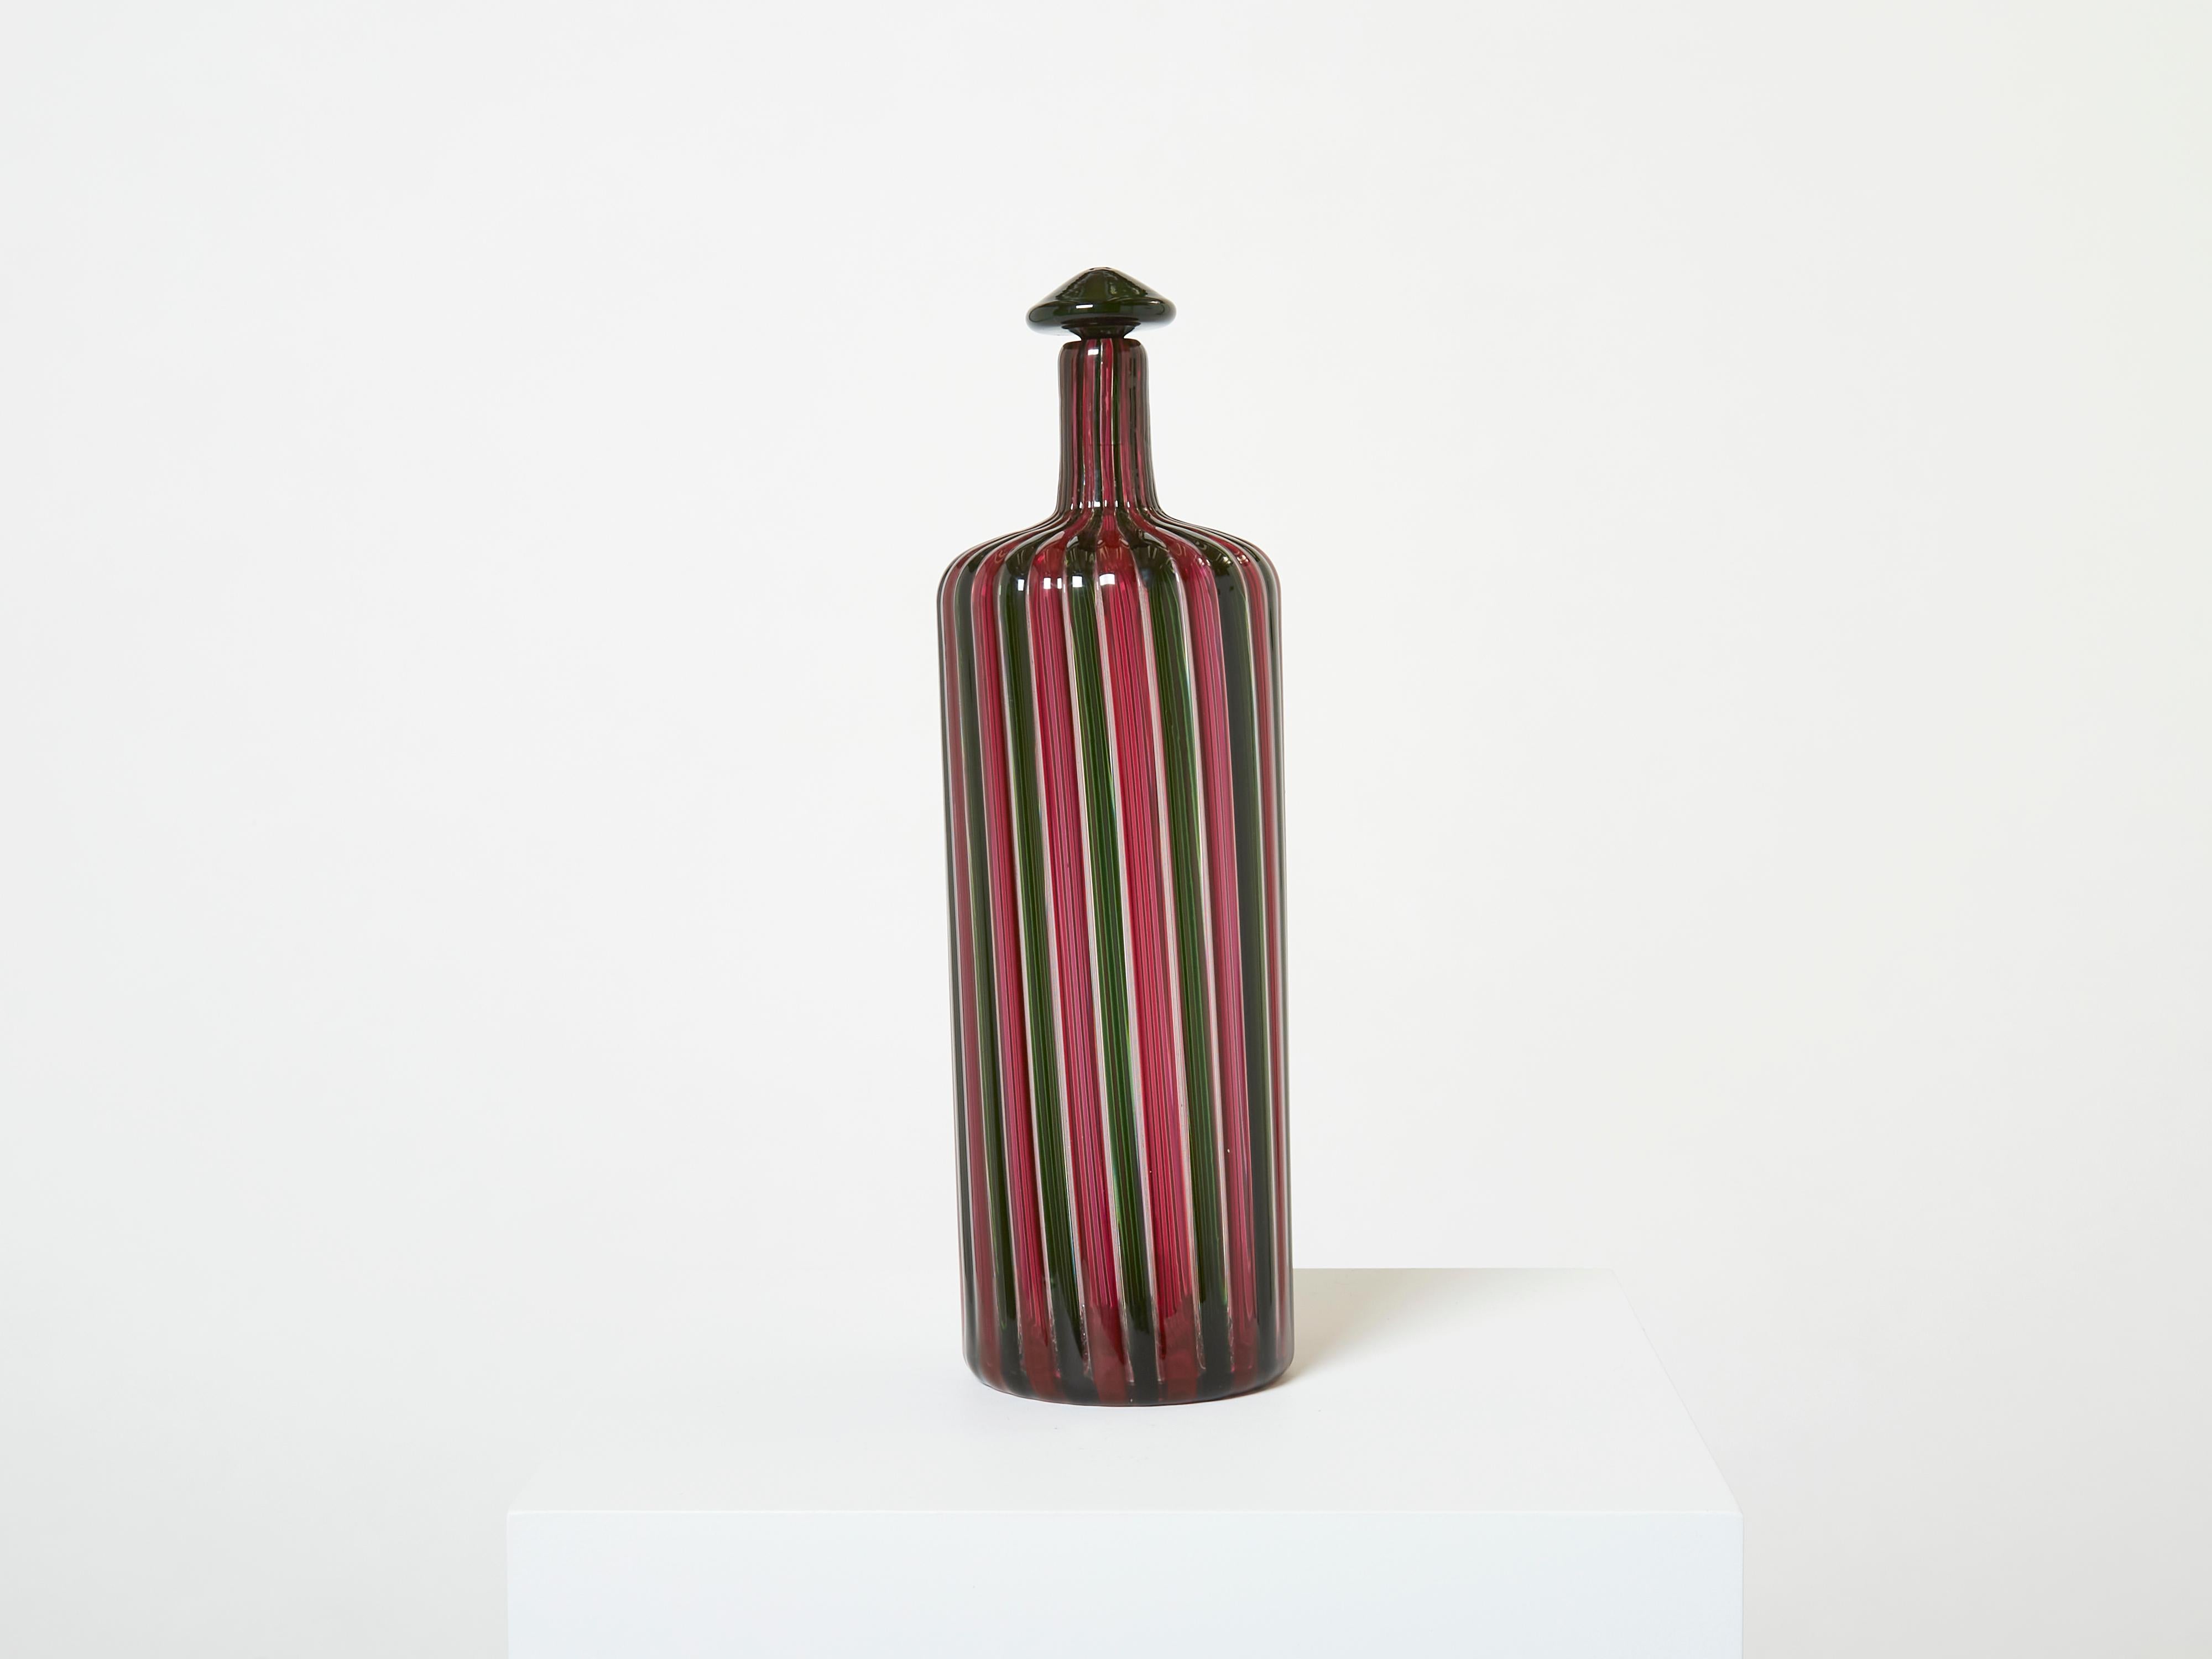 Seltene Flasche von Gio Ponti und Paolo Venini für Venini aus den 1950er Jahren, Modell 